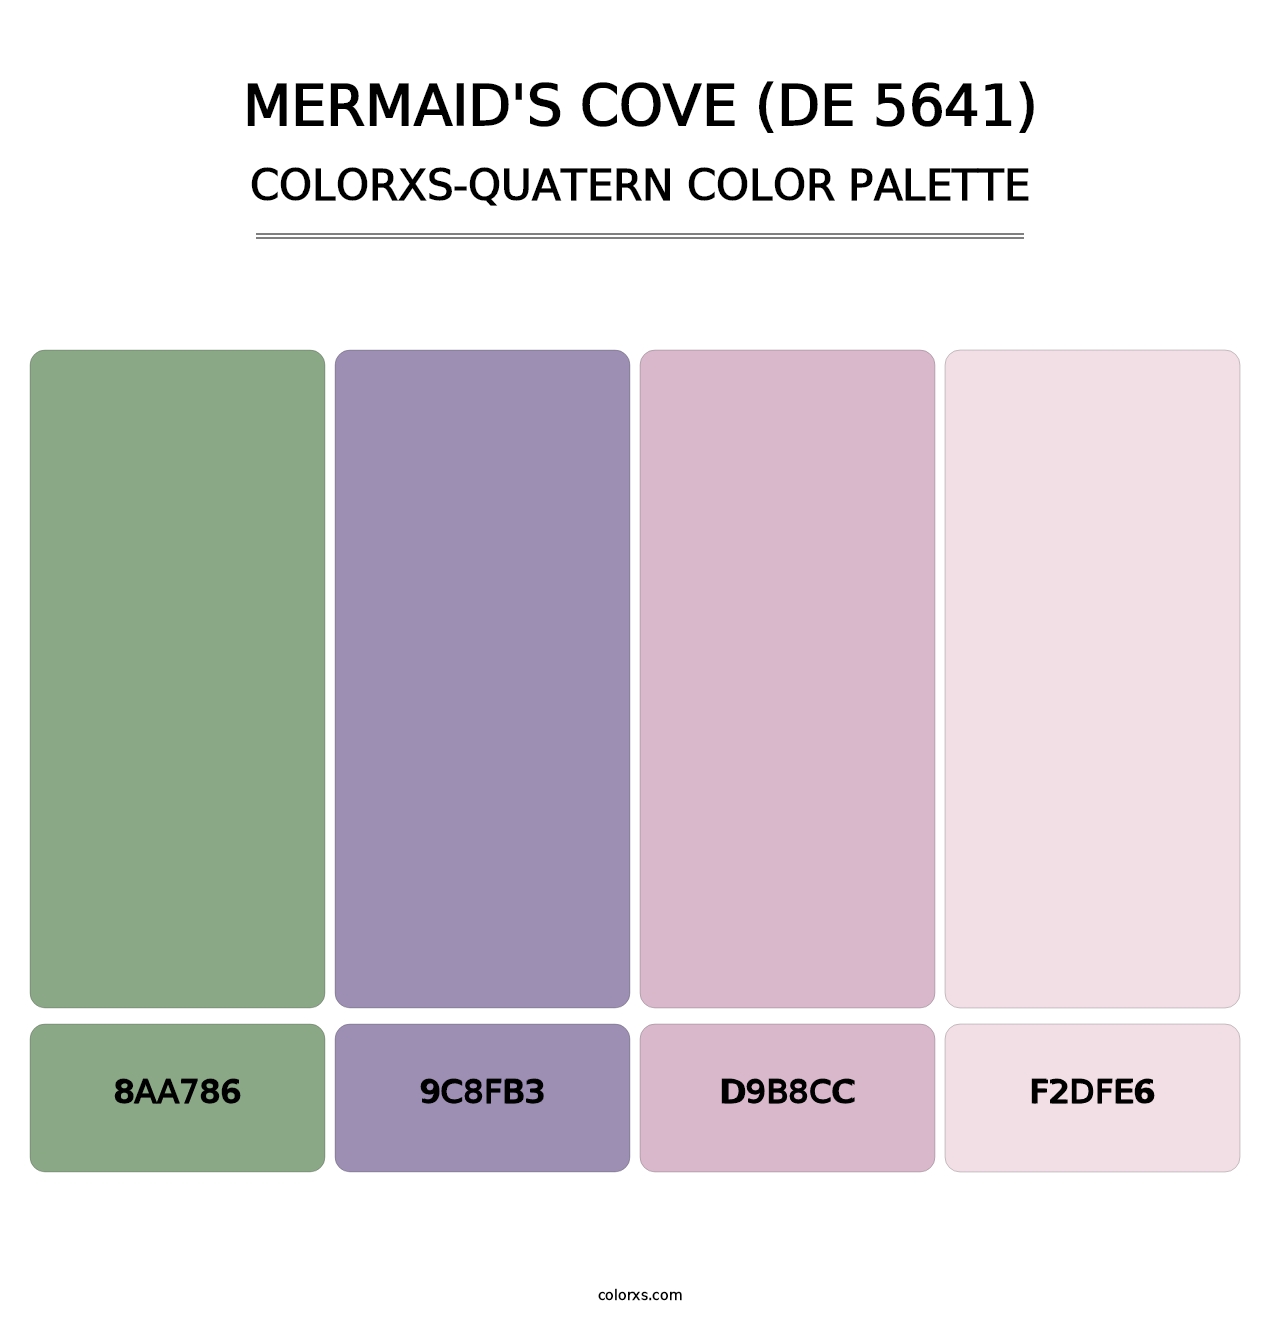 Mermaid's Cove (DE 5641) - Colorxs Quatern Palette